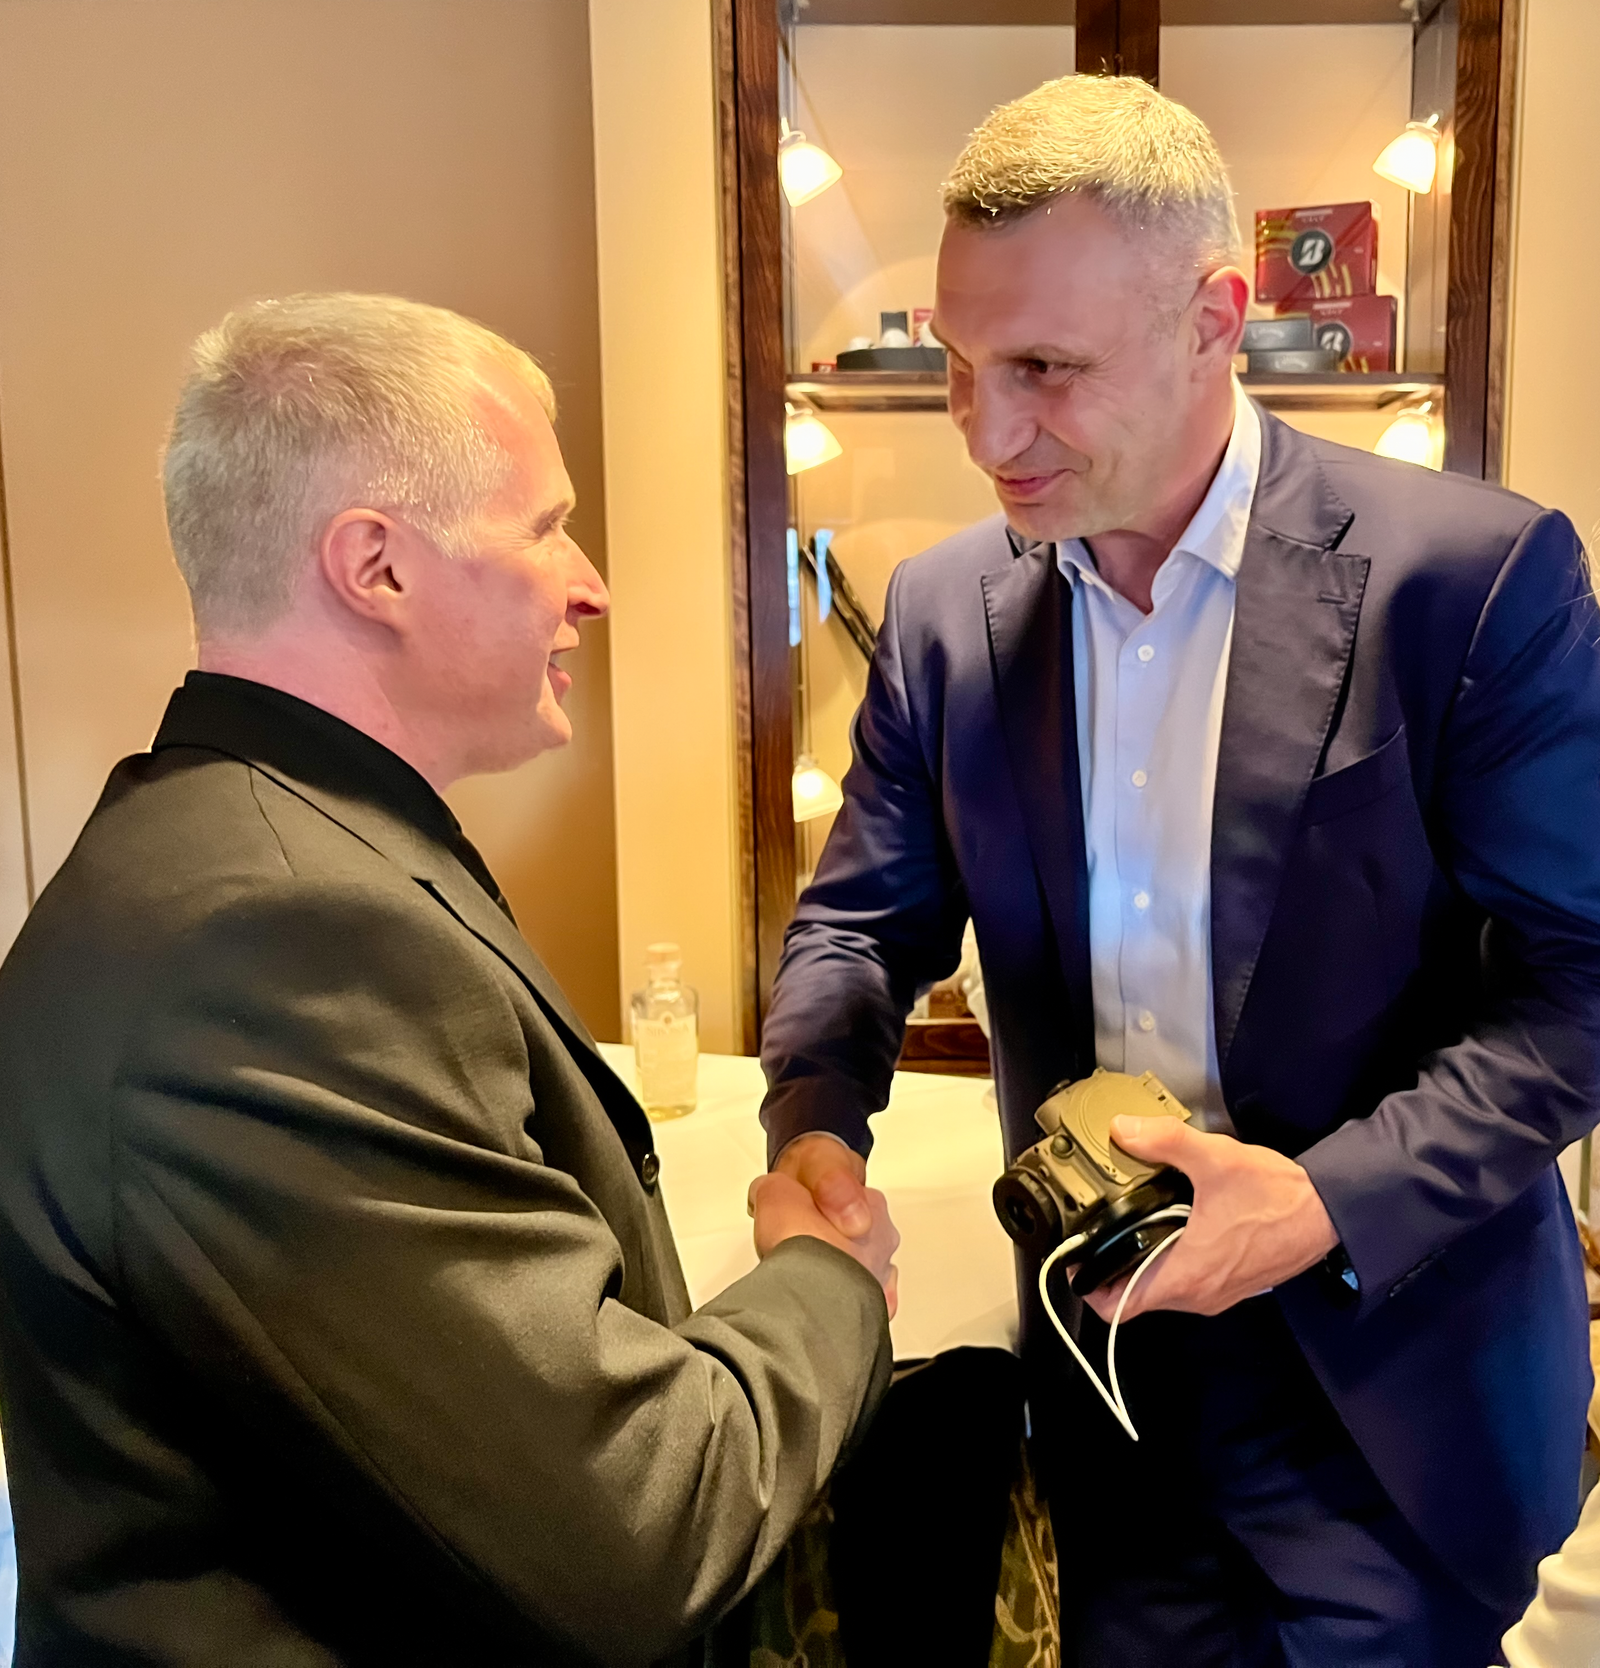 Gründer Dr. Andres übergibt TigIR an Vitali Klitschko